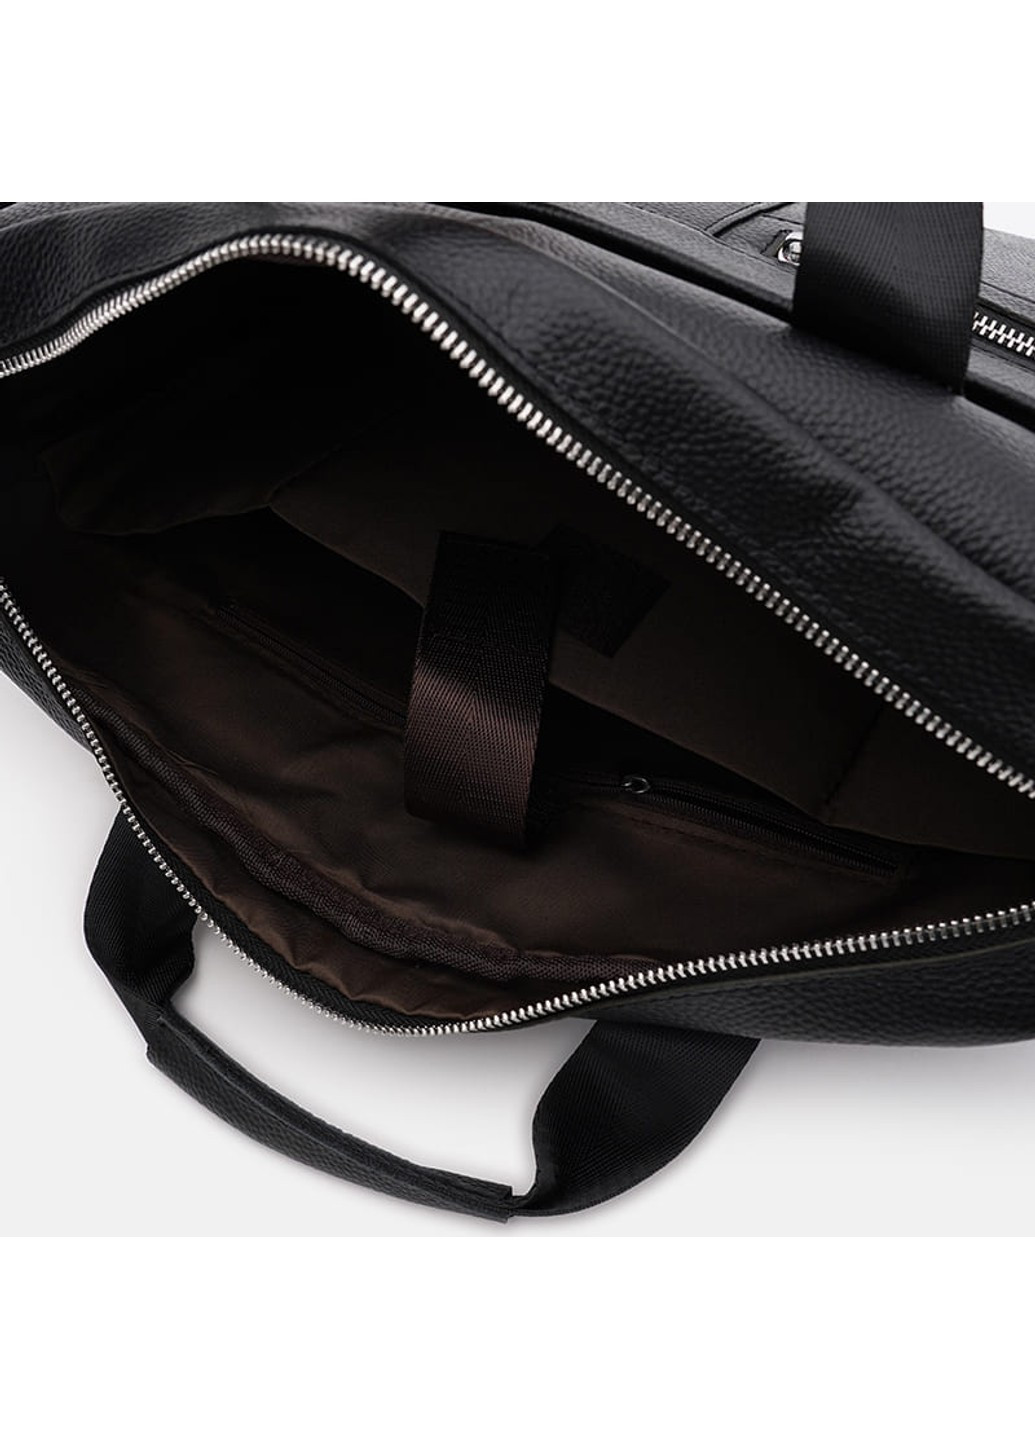 Чоловічі шкіряні сумки - портфель K17067bl-black Keizer (274535898)